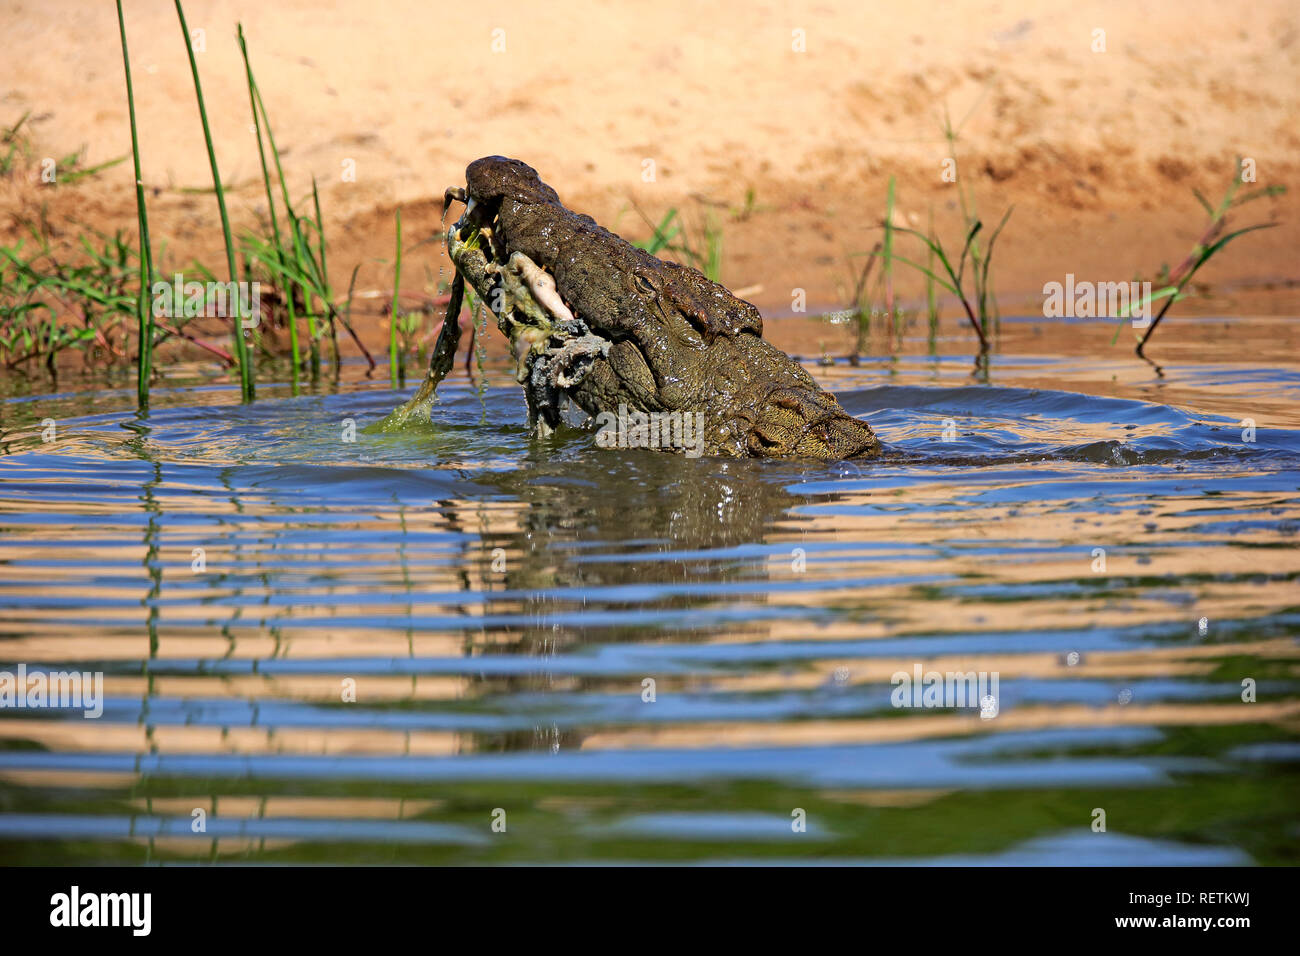 Crocodile du Nil, des profils dans l'eau avec les proies, Sabi Sand Game Reserve, parc national Kruger, Afrique du Sud, Afrique, (Crocodylus niloticus) Banque D'Images